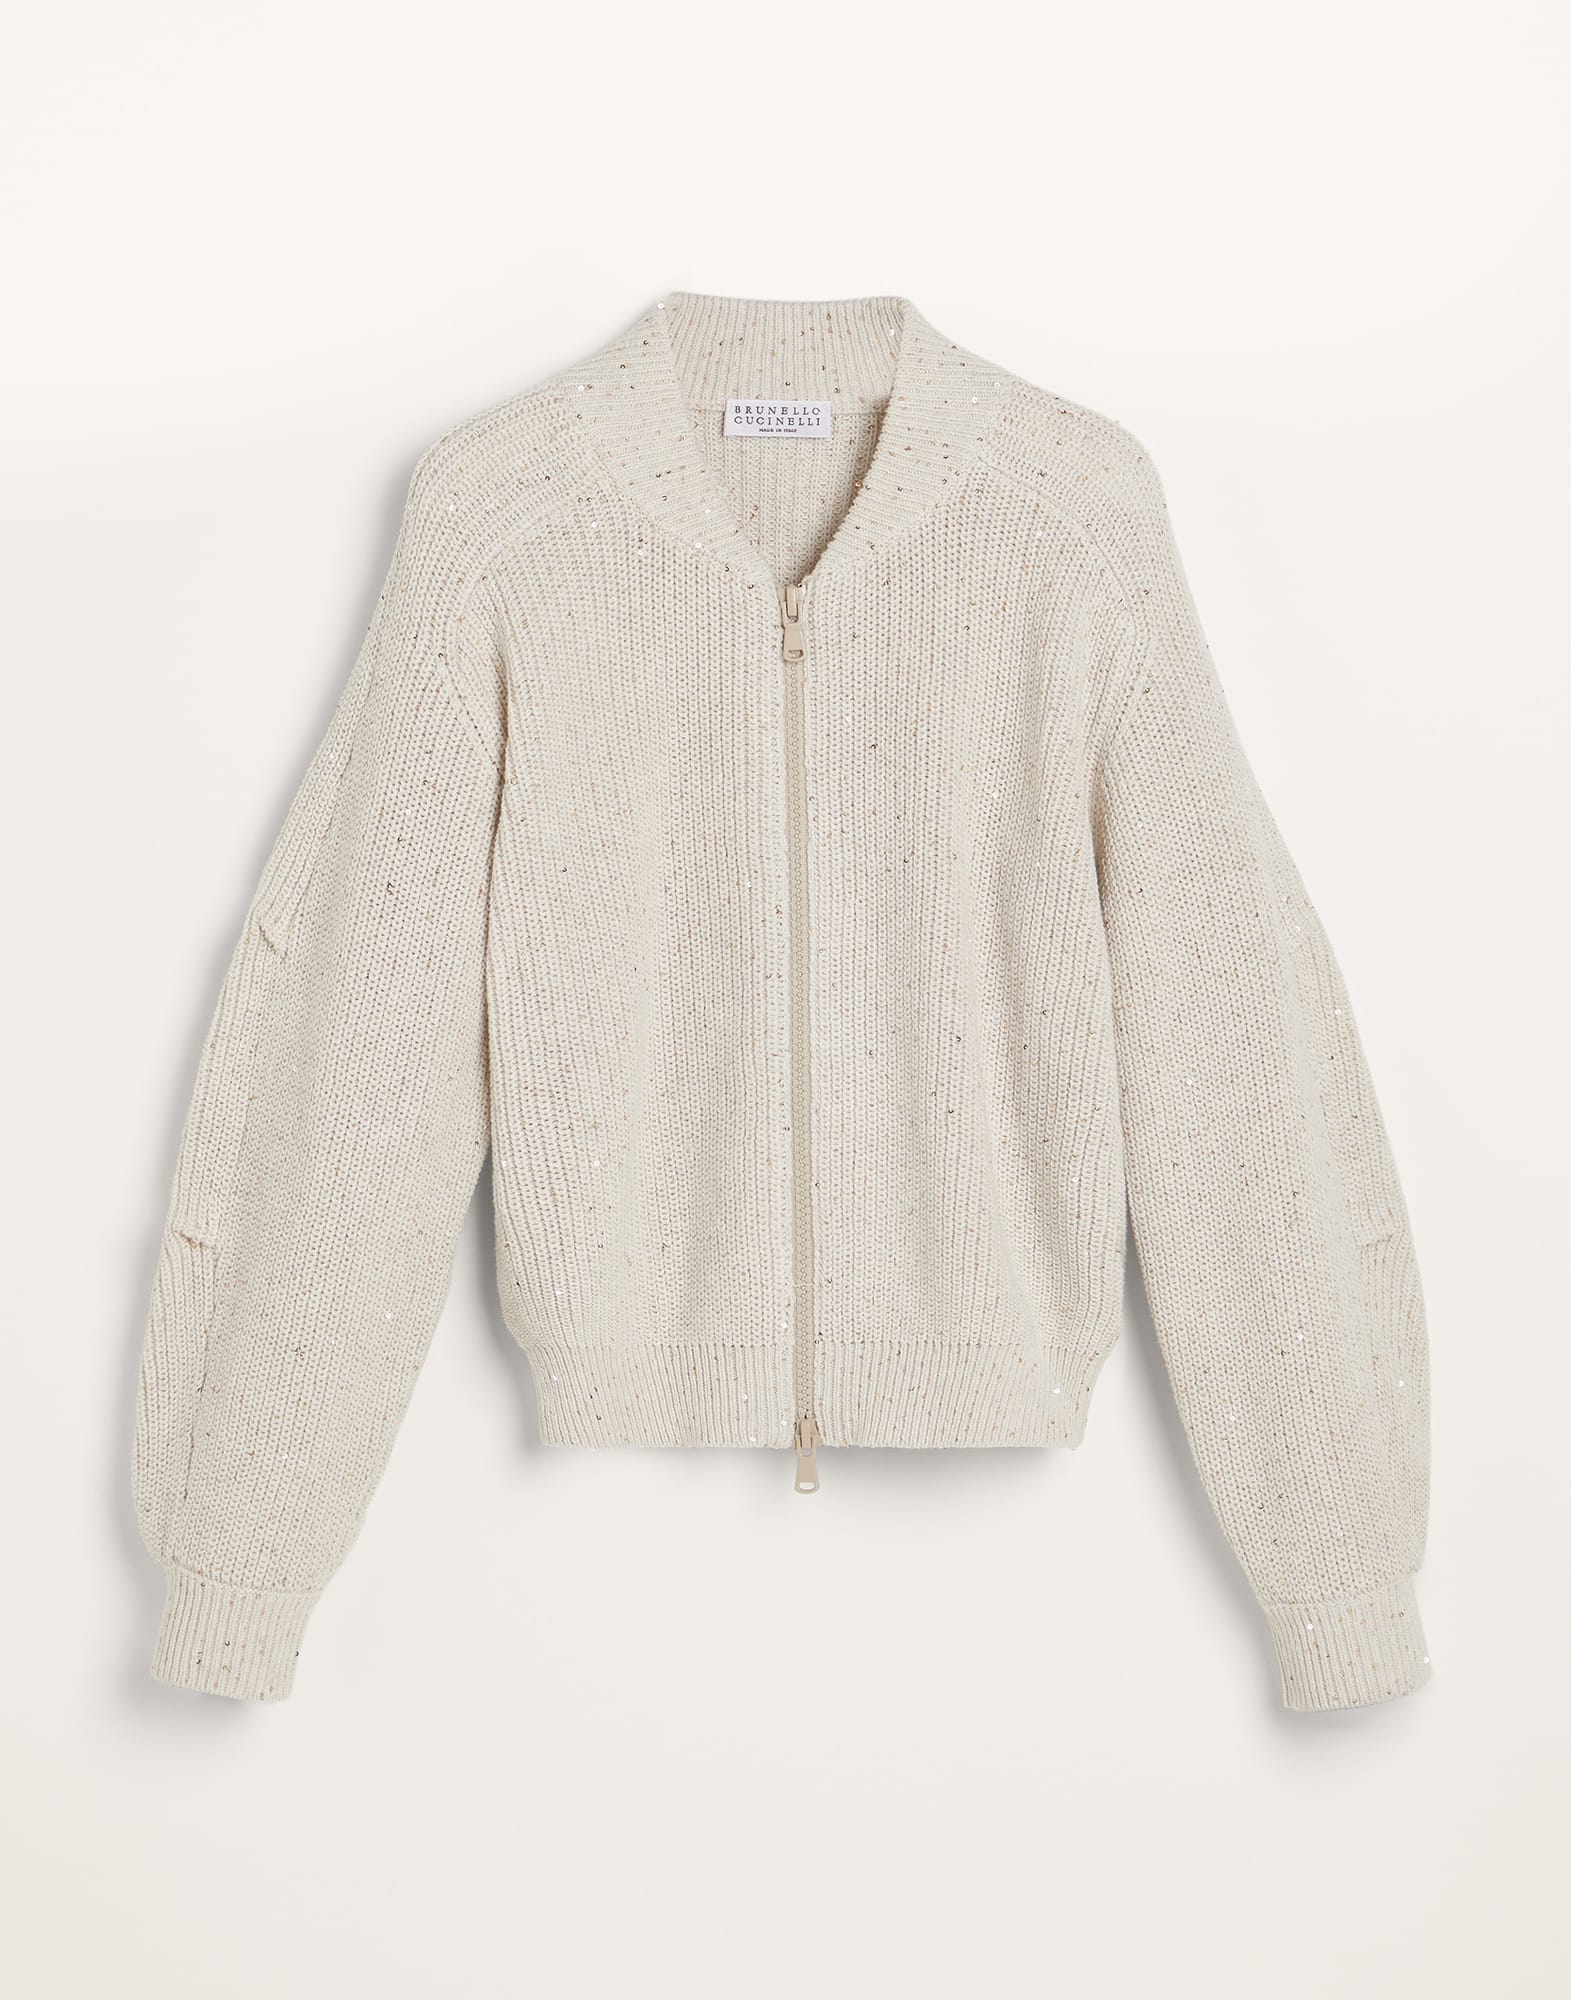 Zara Ribbed Knit Sweater in Ecru Size 8-9